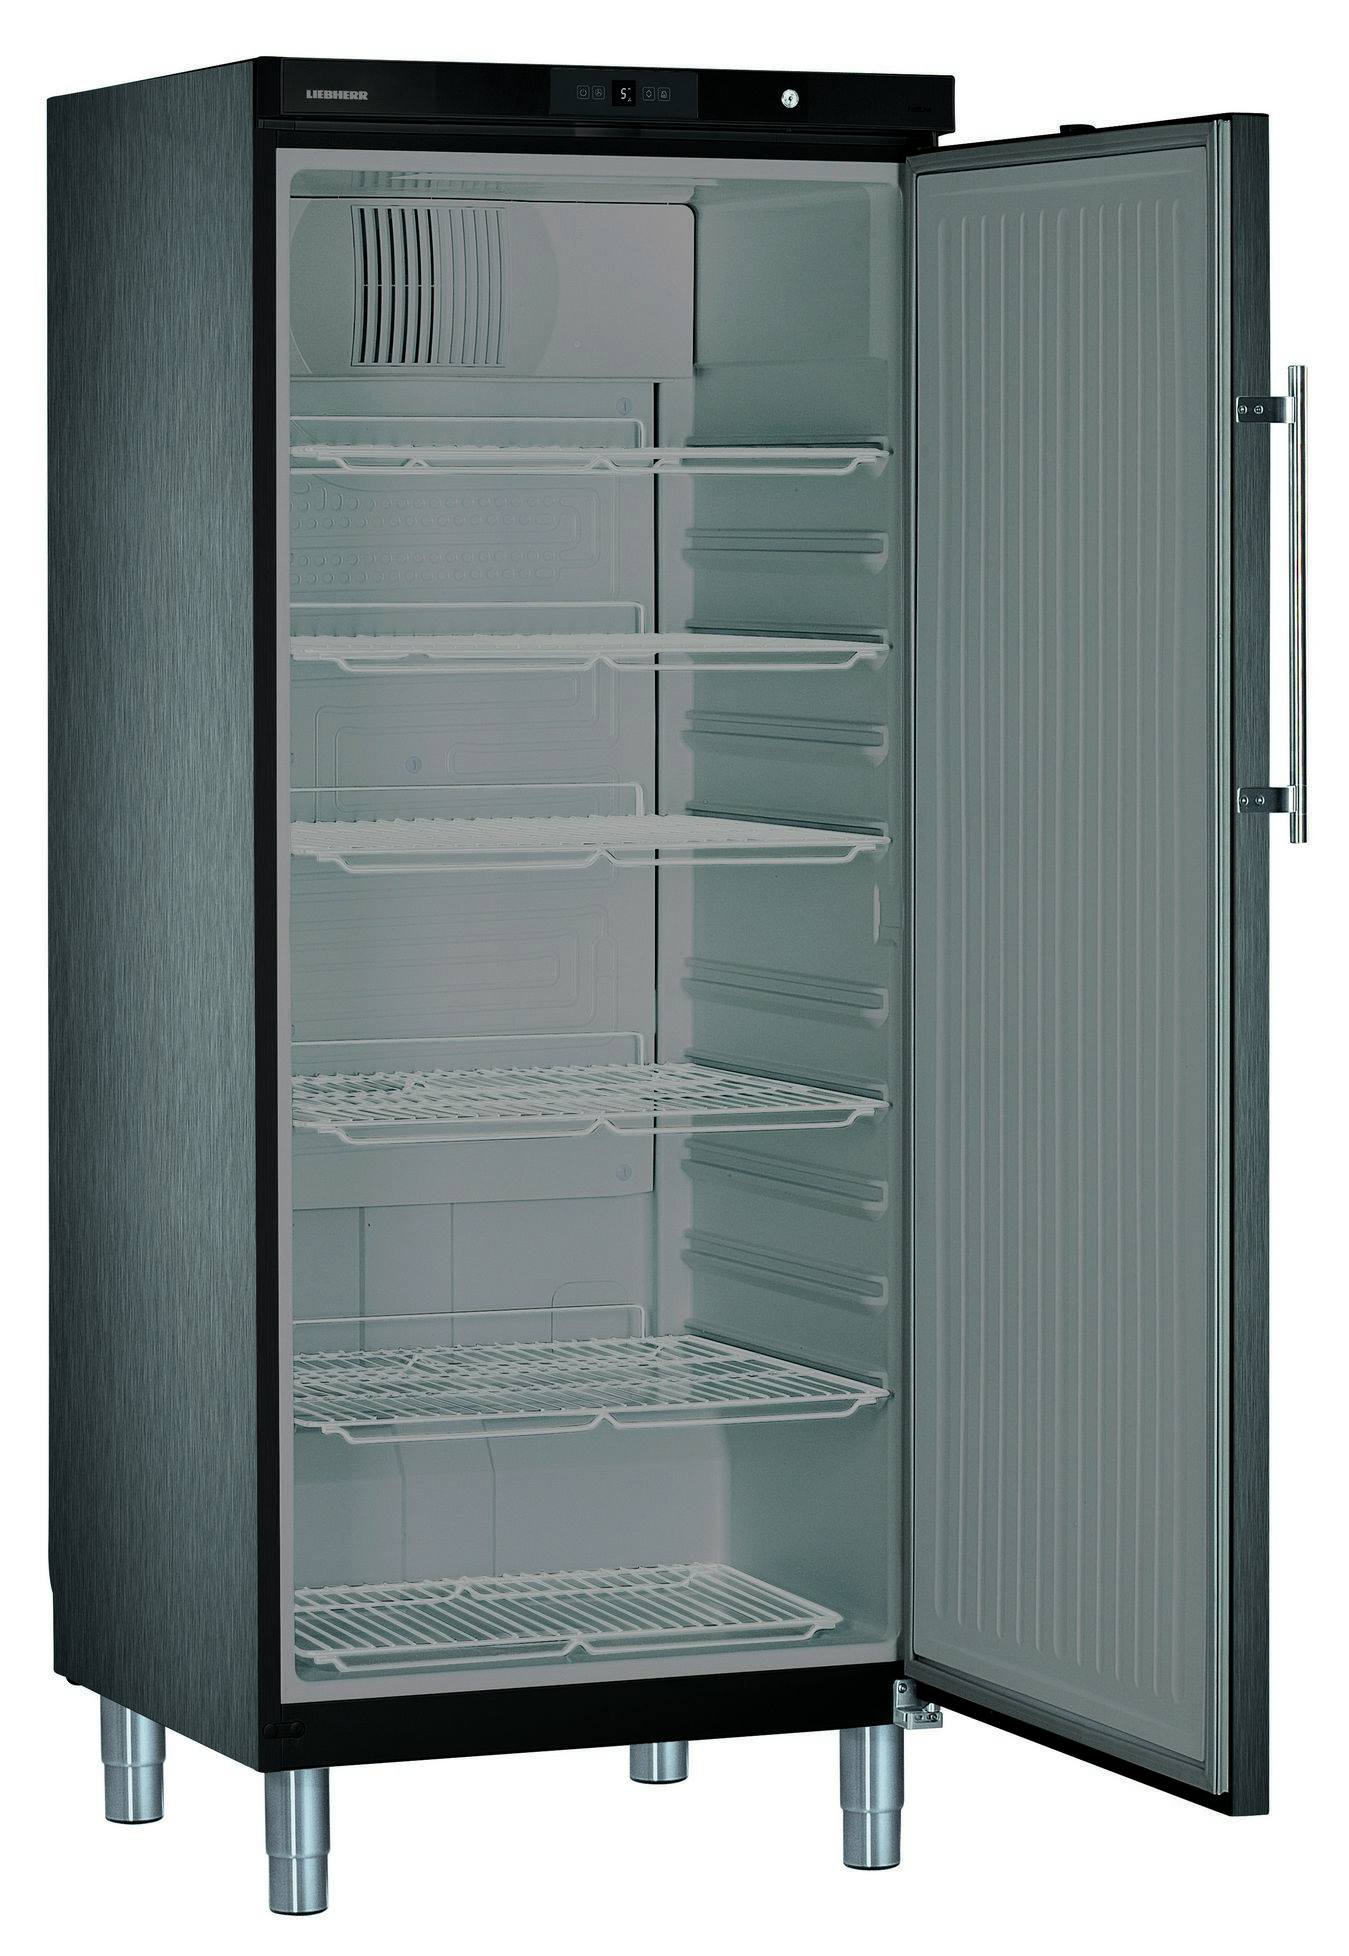 586 literes hűtő, ventilációs hűtéssel, teleajtós, fekete, +1/+15°C